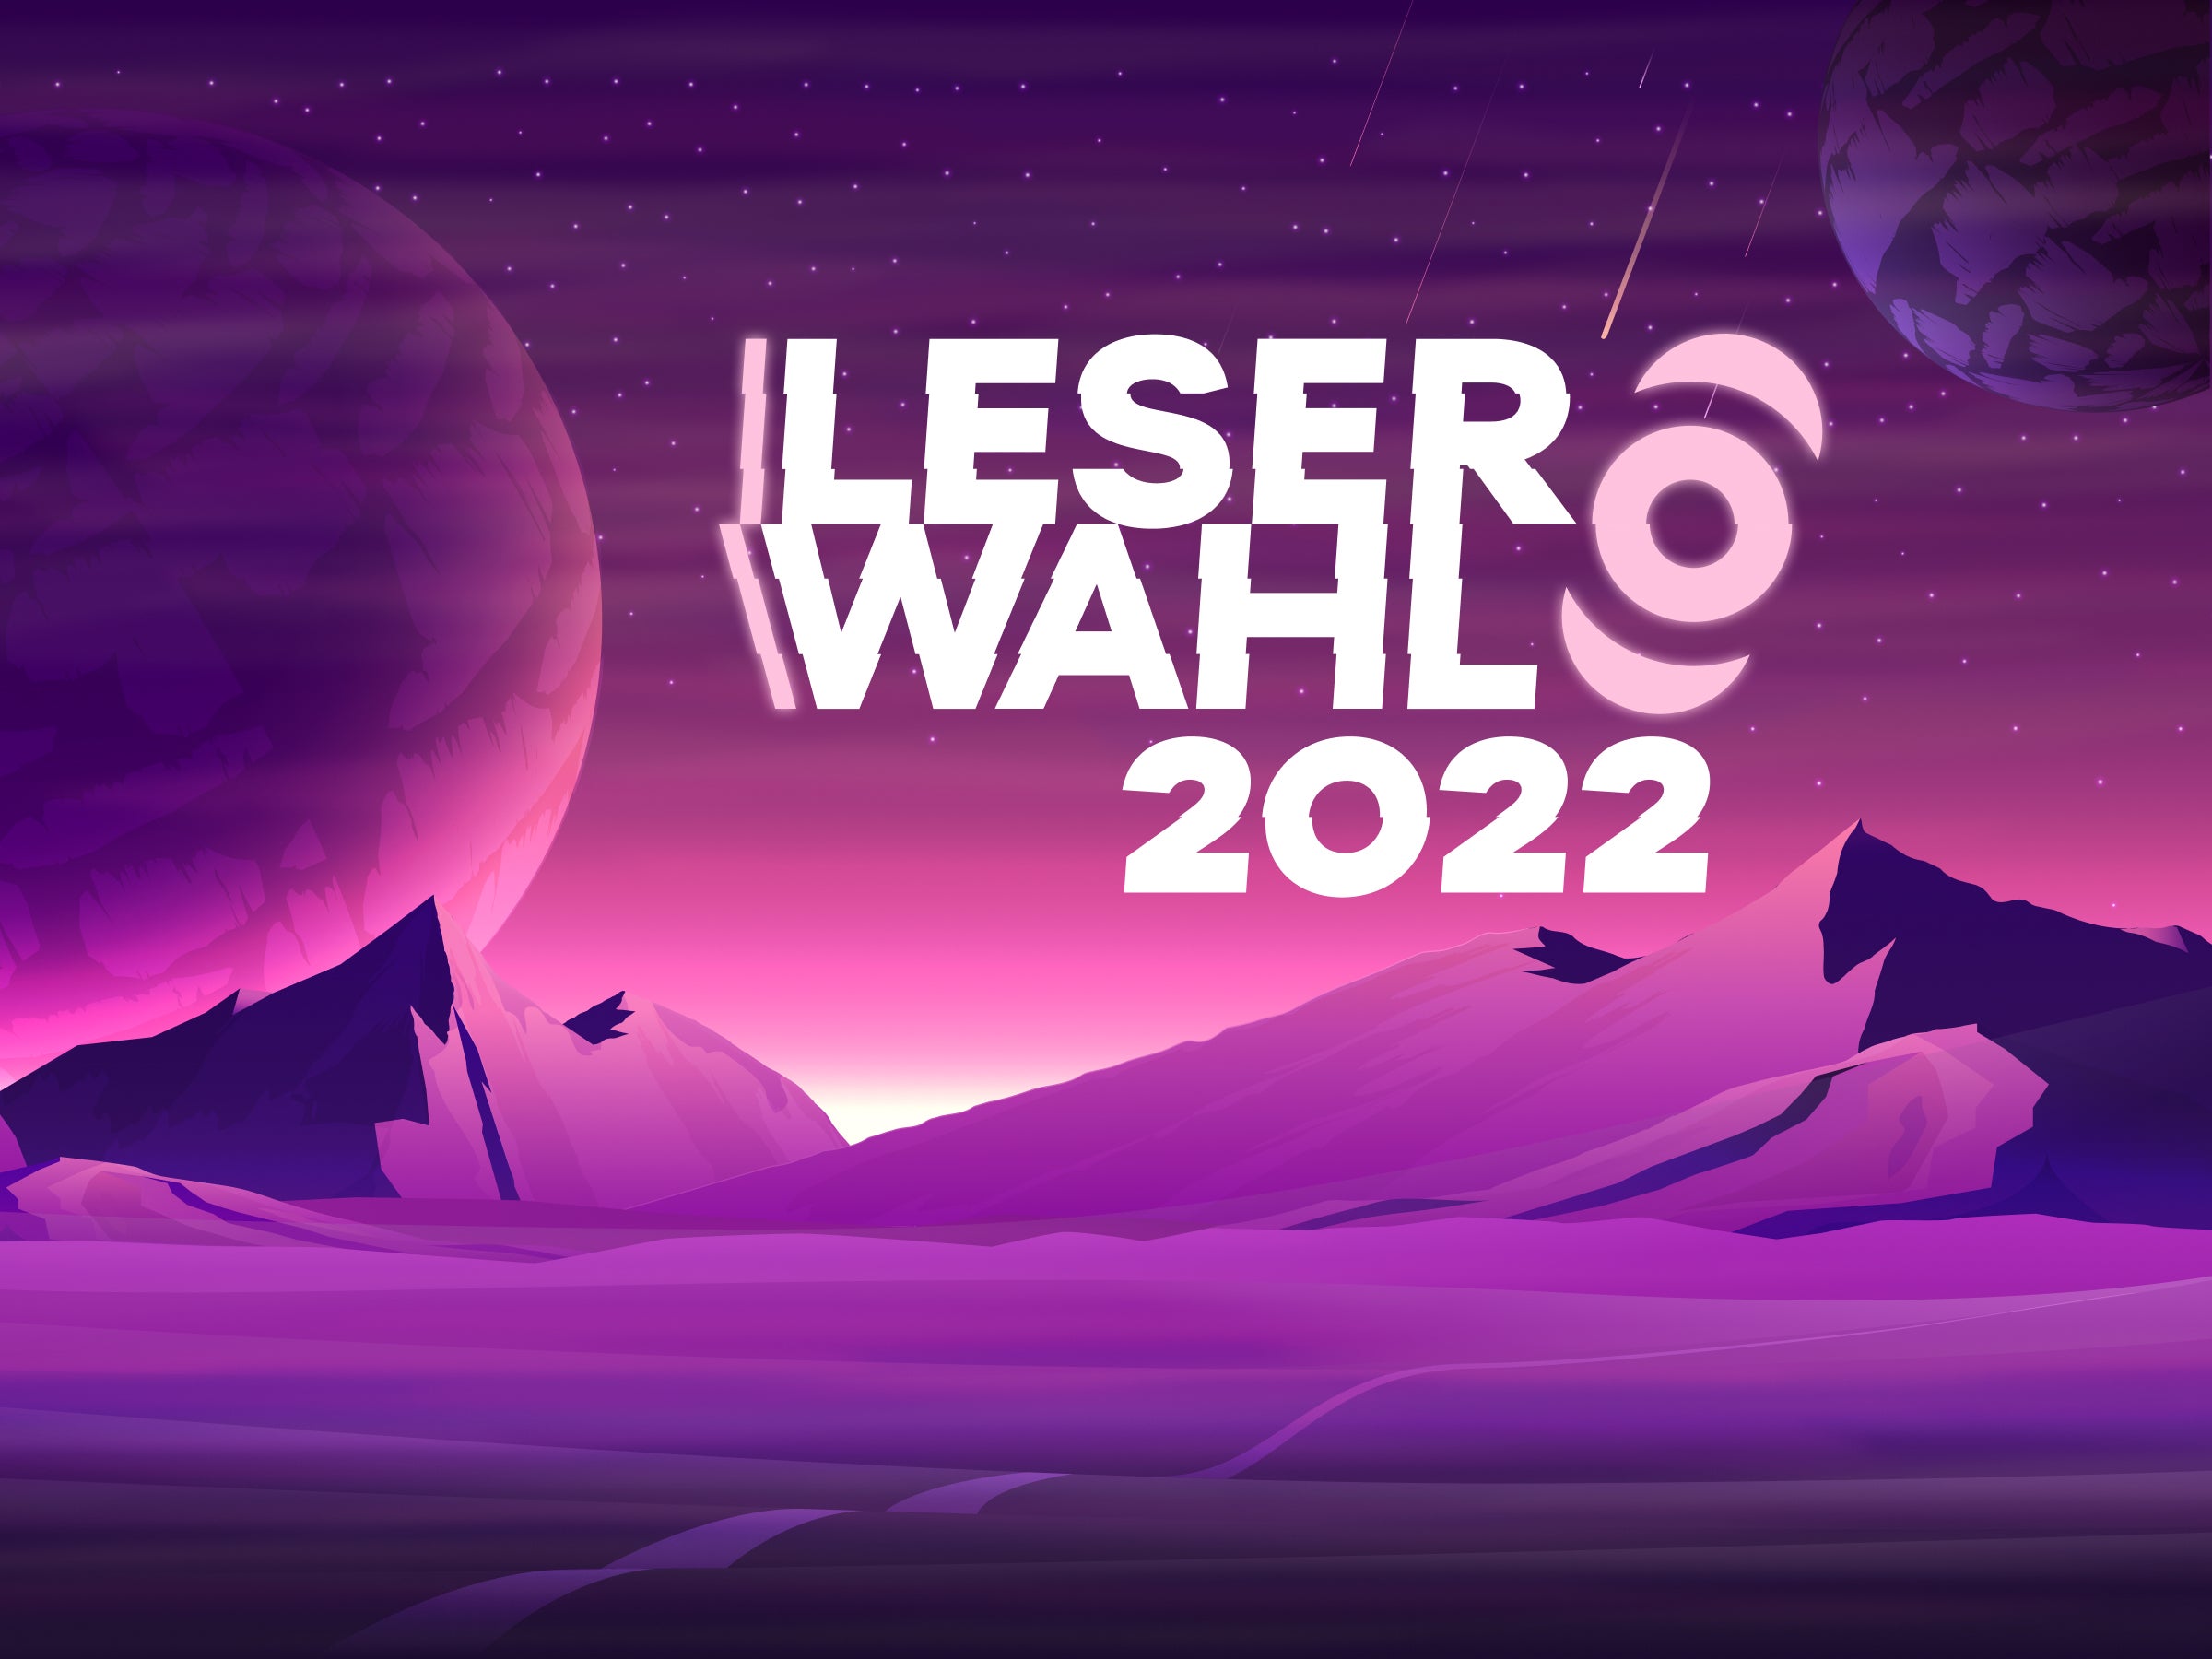 Leserwahl-2022-Unser-gro-es-Leser-Event-startet-mit-Lichtgeschwindigkeit-in-den-Orbit